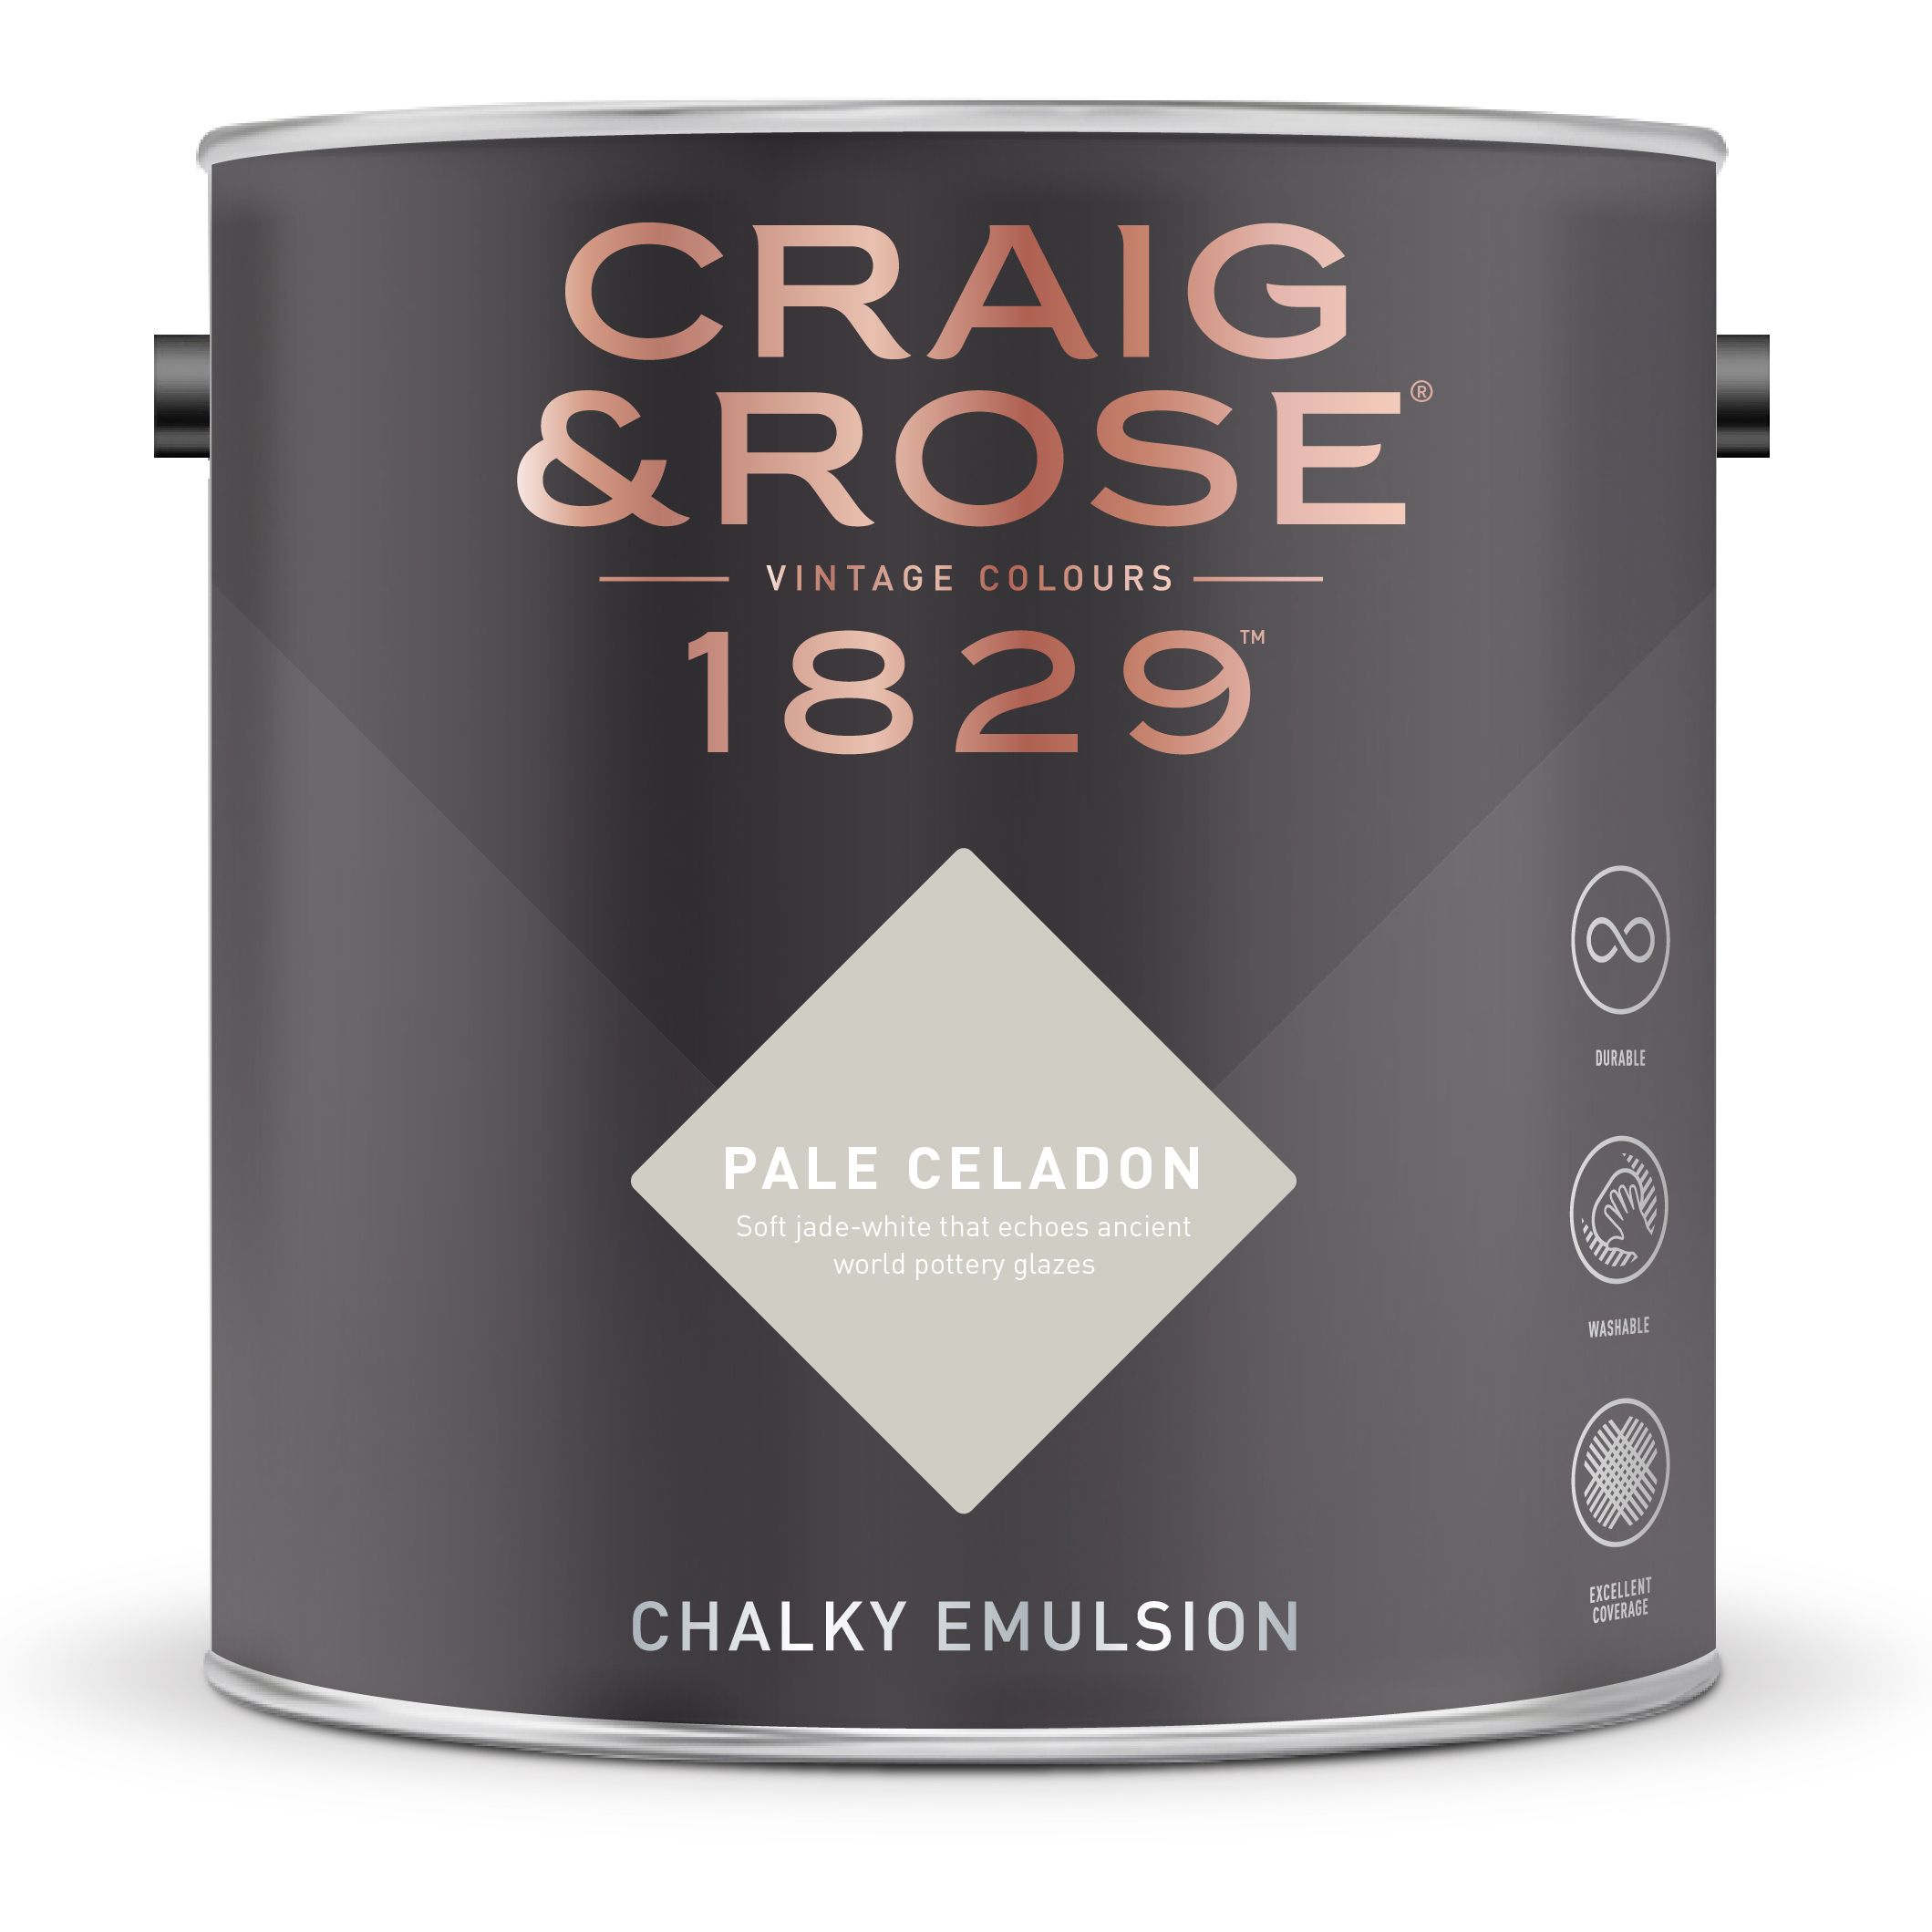 Craig & Rose 1829 Pale Celadon  Chalky Emulsion paint, 2.5L